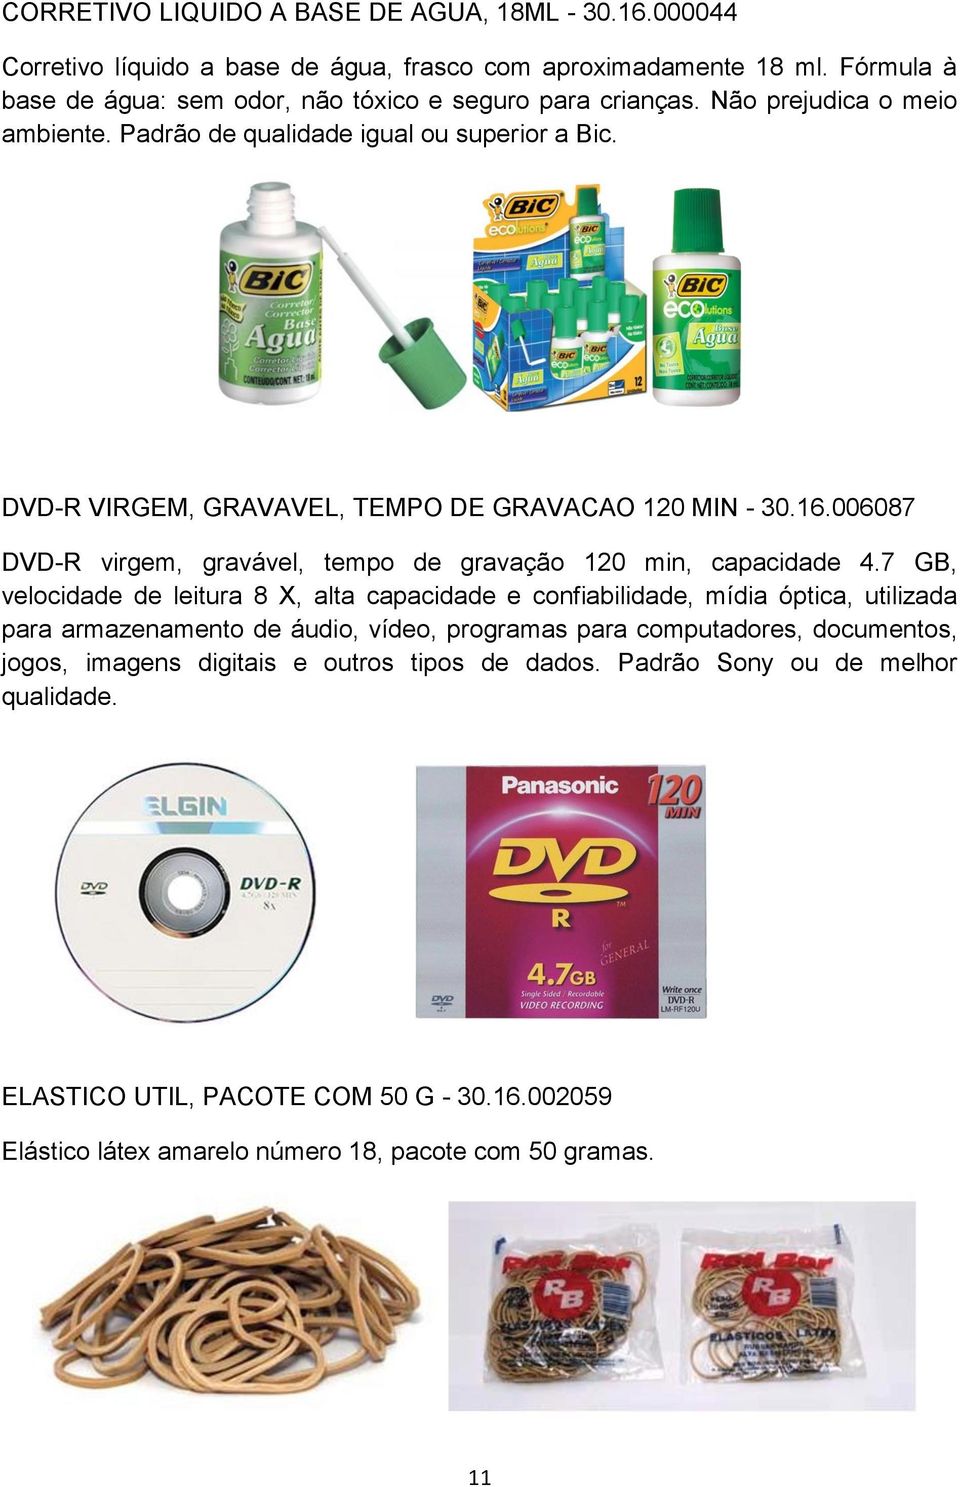 DVD-R VIRGEM, GRAVAVEL, TEMPO DE GRAVACAO 120 MIN - 30.16.006087 DVD-R virgem, gravável, tempo de gravação 120 min, capacidade 4.